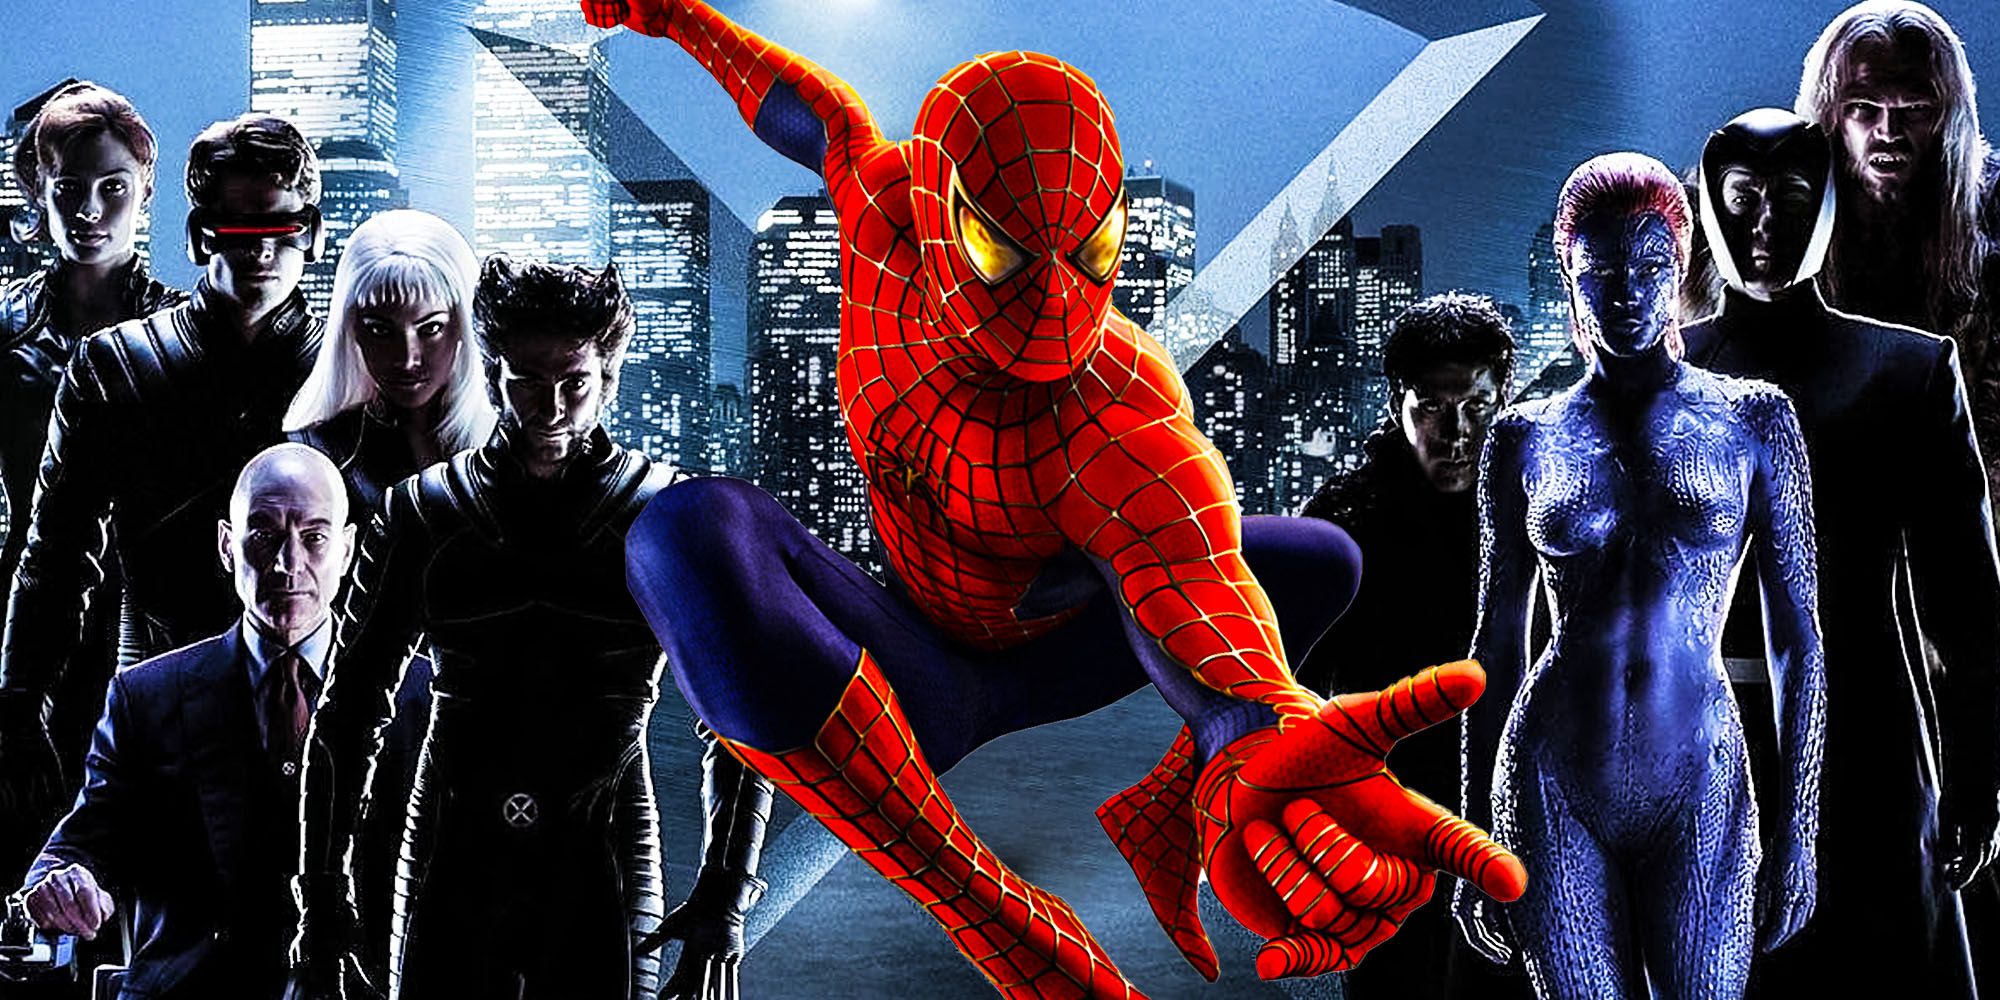 Watch Spider-Man's Surprise Cameo In X-Men Blooper Scene